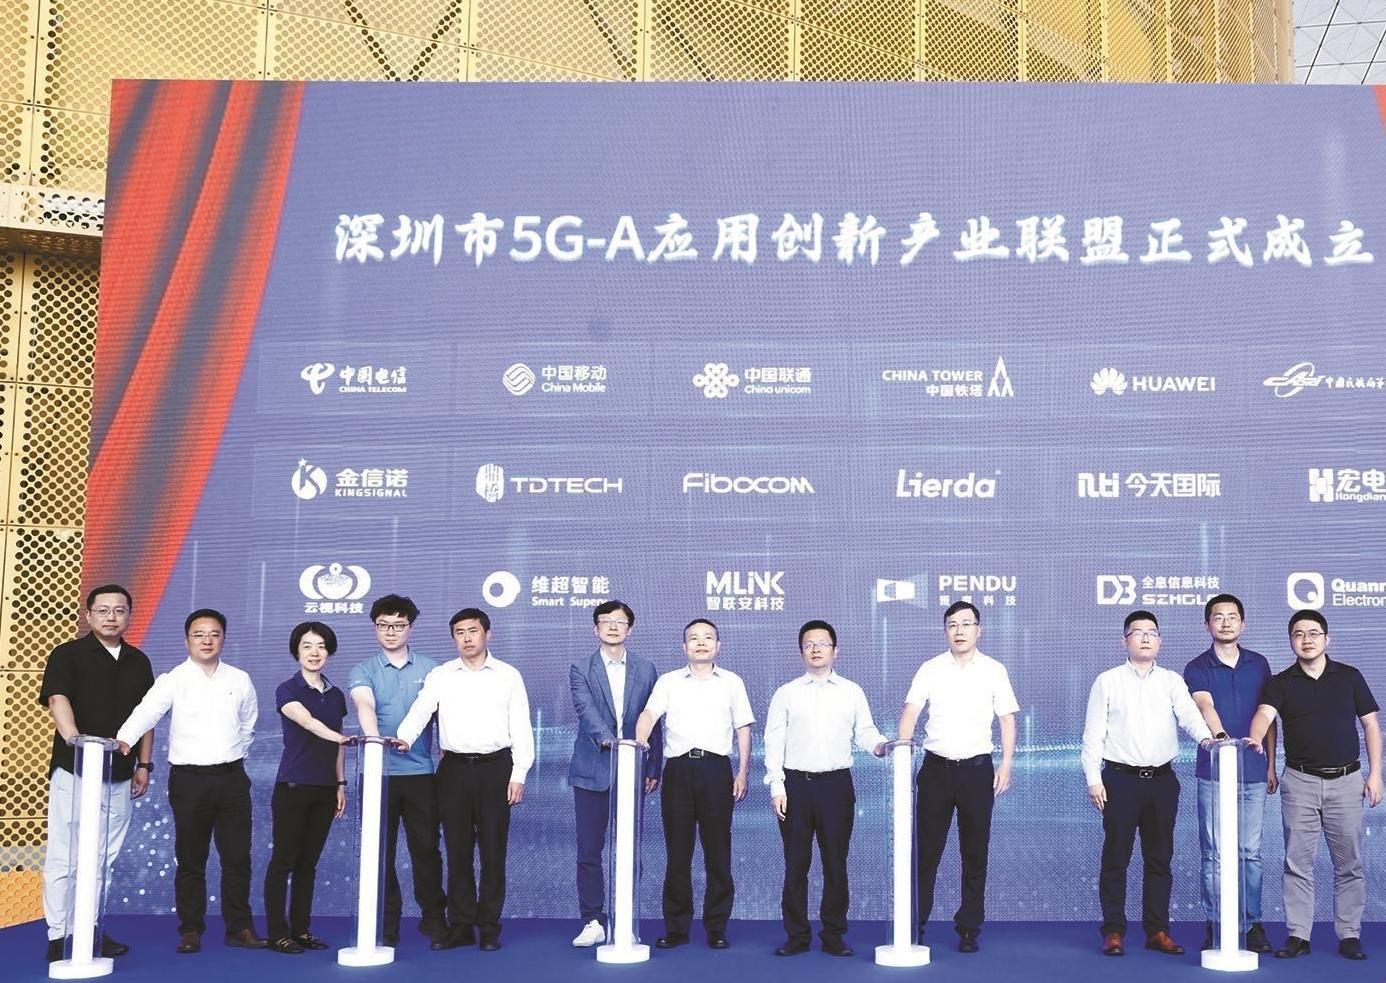 深圳率先迈入5G-A时代 公布90个方案丰富应用场景